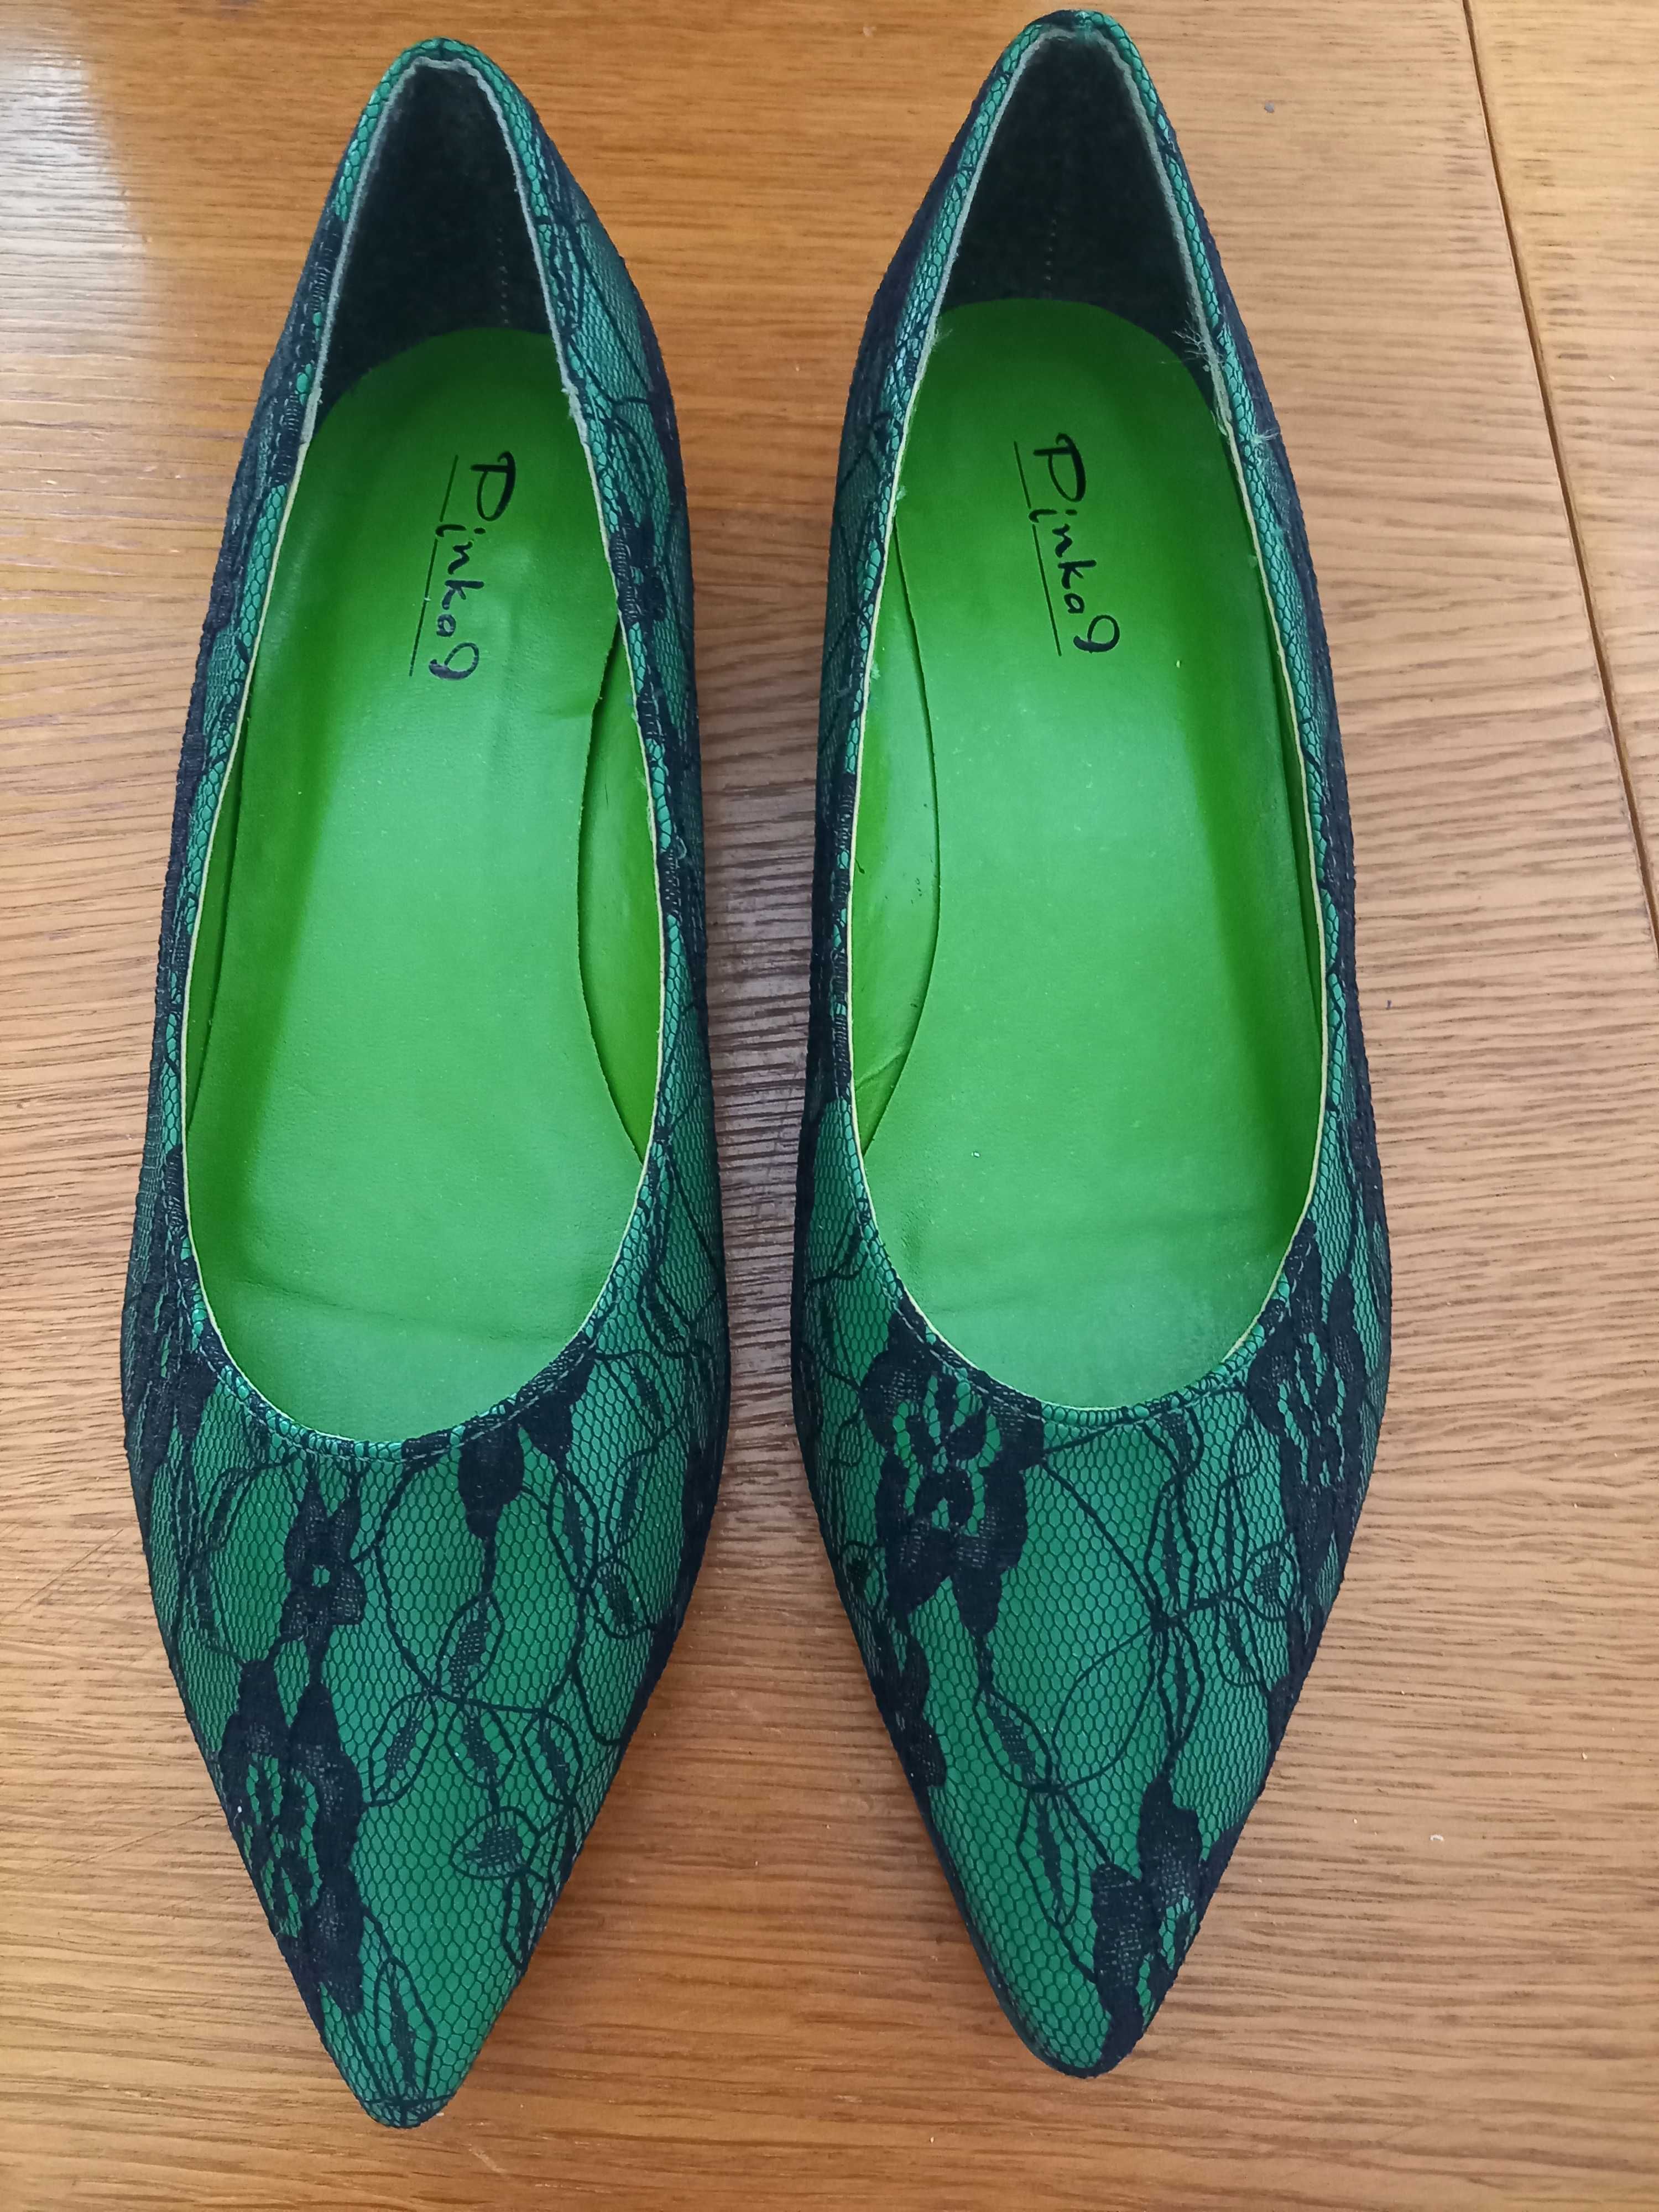 Sapatos verdes com renda